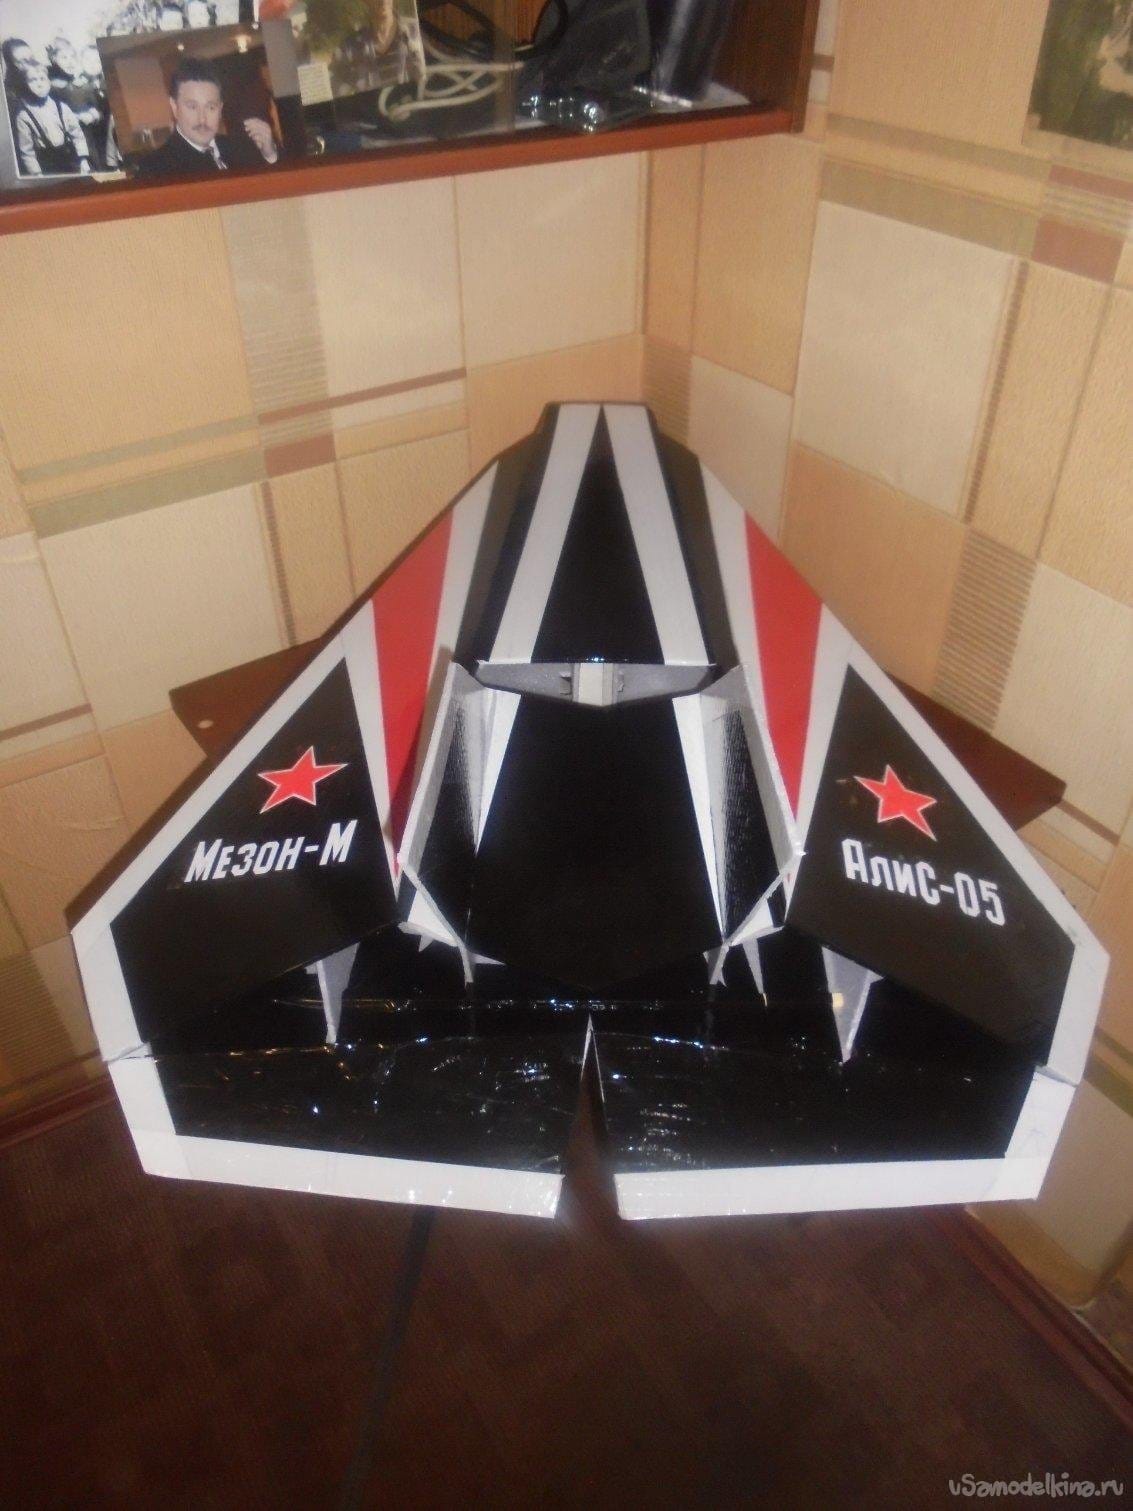 Авиамодель АлиС-05 «Мезон-М»